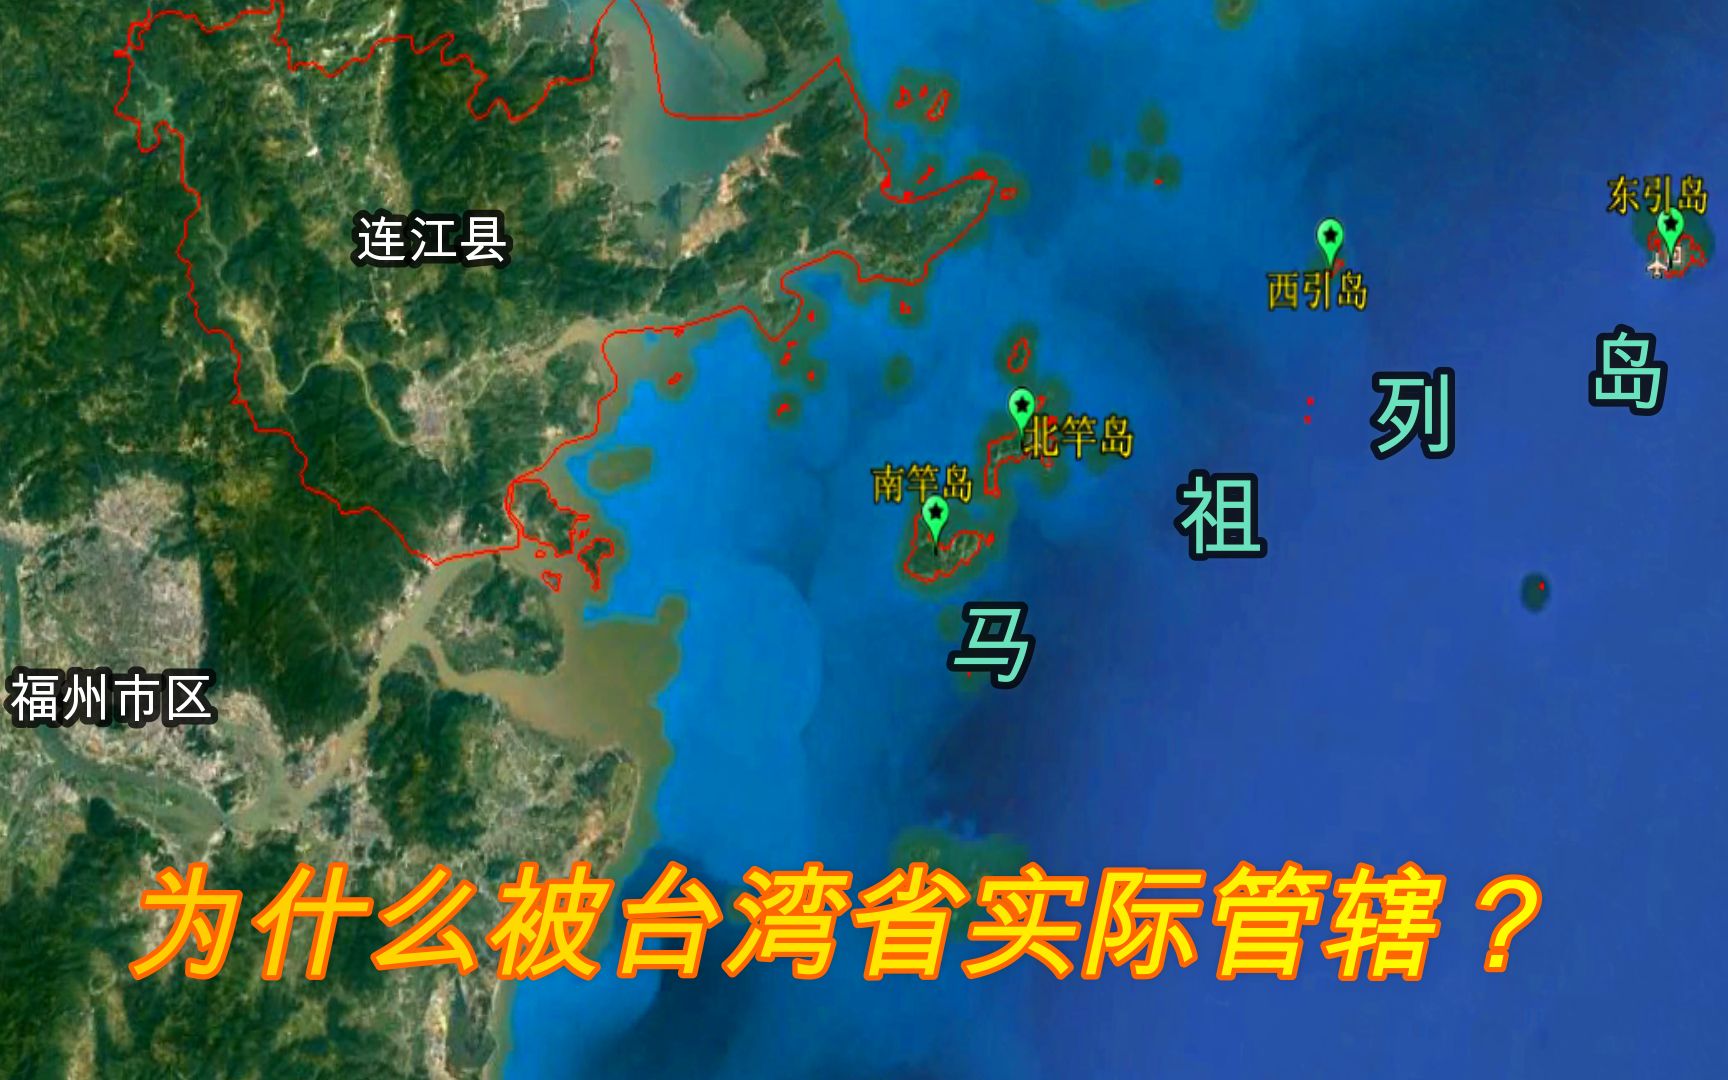 距离大陆仅10公里的马祖岛,为何由台湾省管辖?有什么重要意义吗?